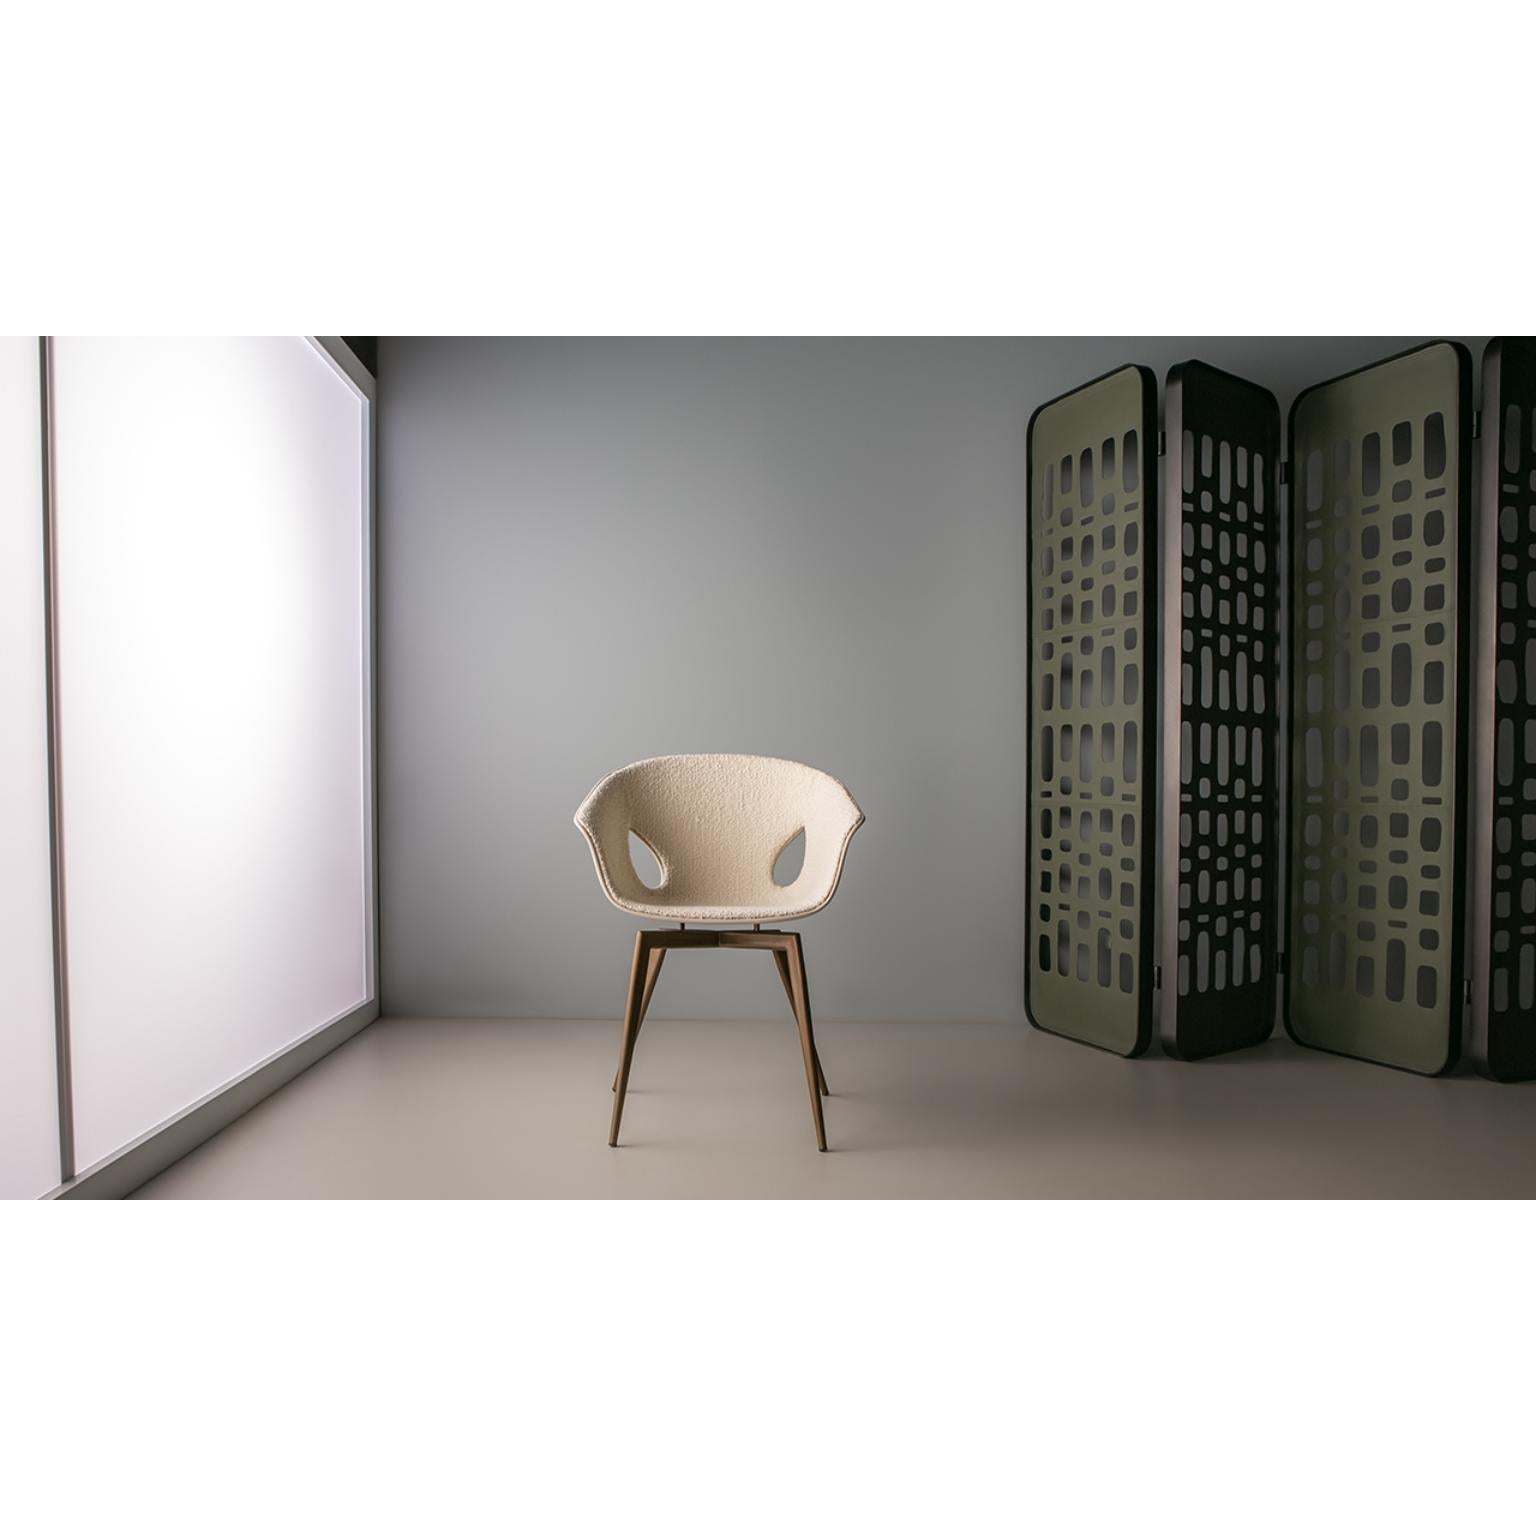 Luuc-Stuhl von Doimo Brasil
Abmessungen: B 64 x T 60 x H 82 cm 
MATERIALIEN: Metall, Fiberglas, gepolsterter Sitz...


Mit der Absicht, guten Geschmack und Persönlichkeit zu vermitteln, entschlüsselt Doimo Trends und folgt der Entwicklung des